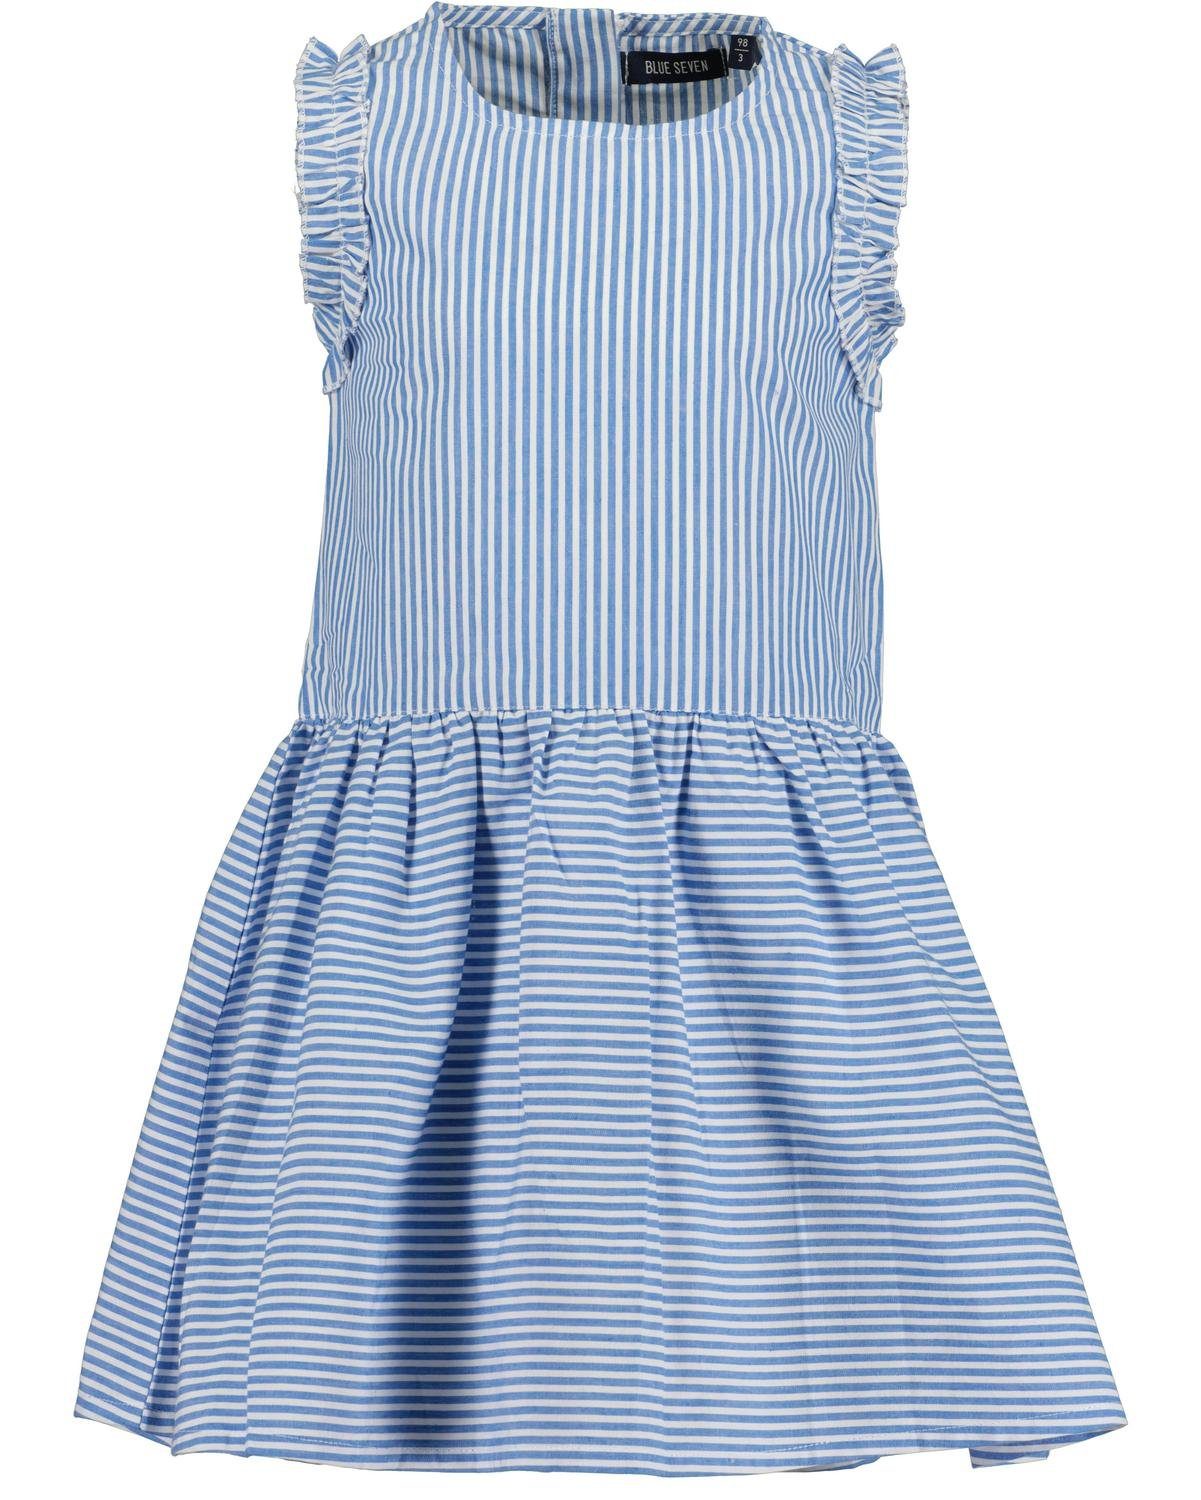 Blue Seven Sommerkleid kl Md Kleid, Rundhals ohne Arm